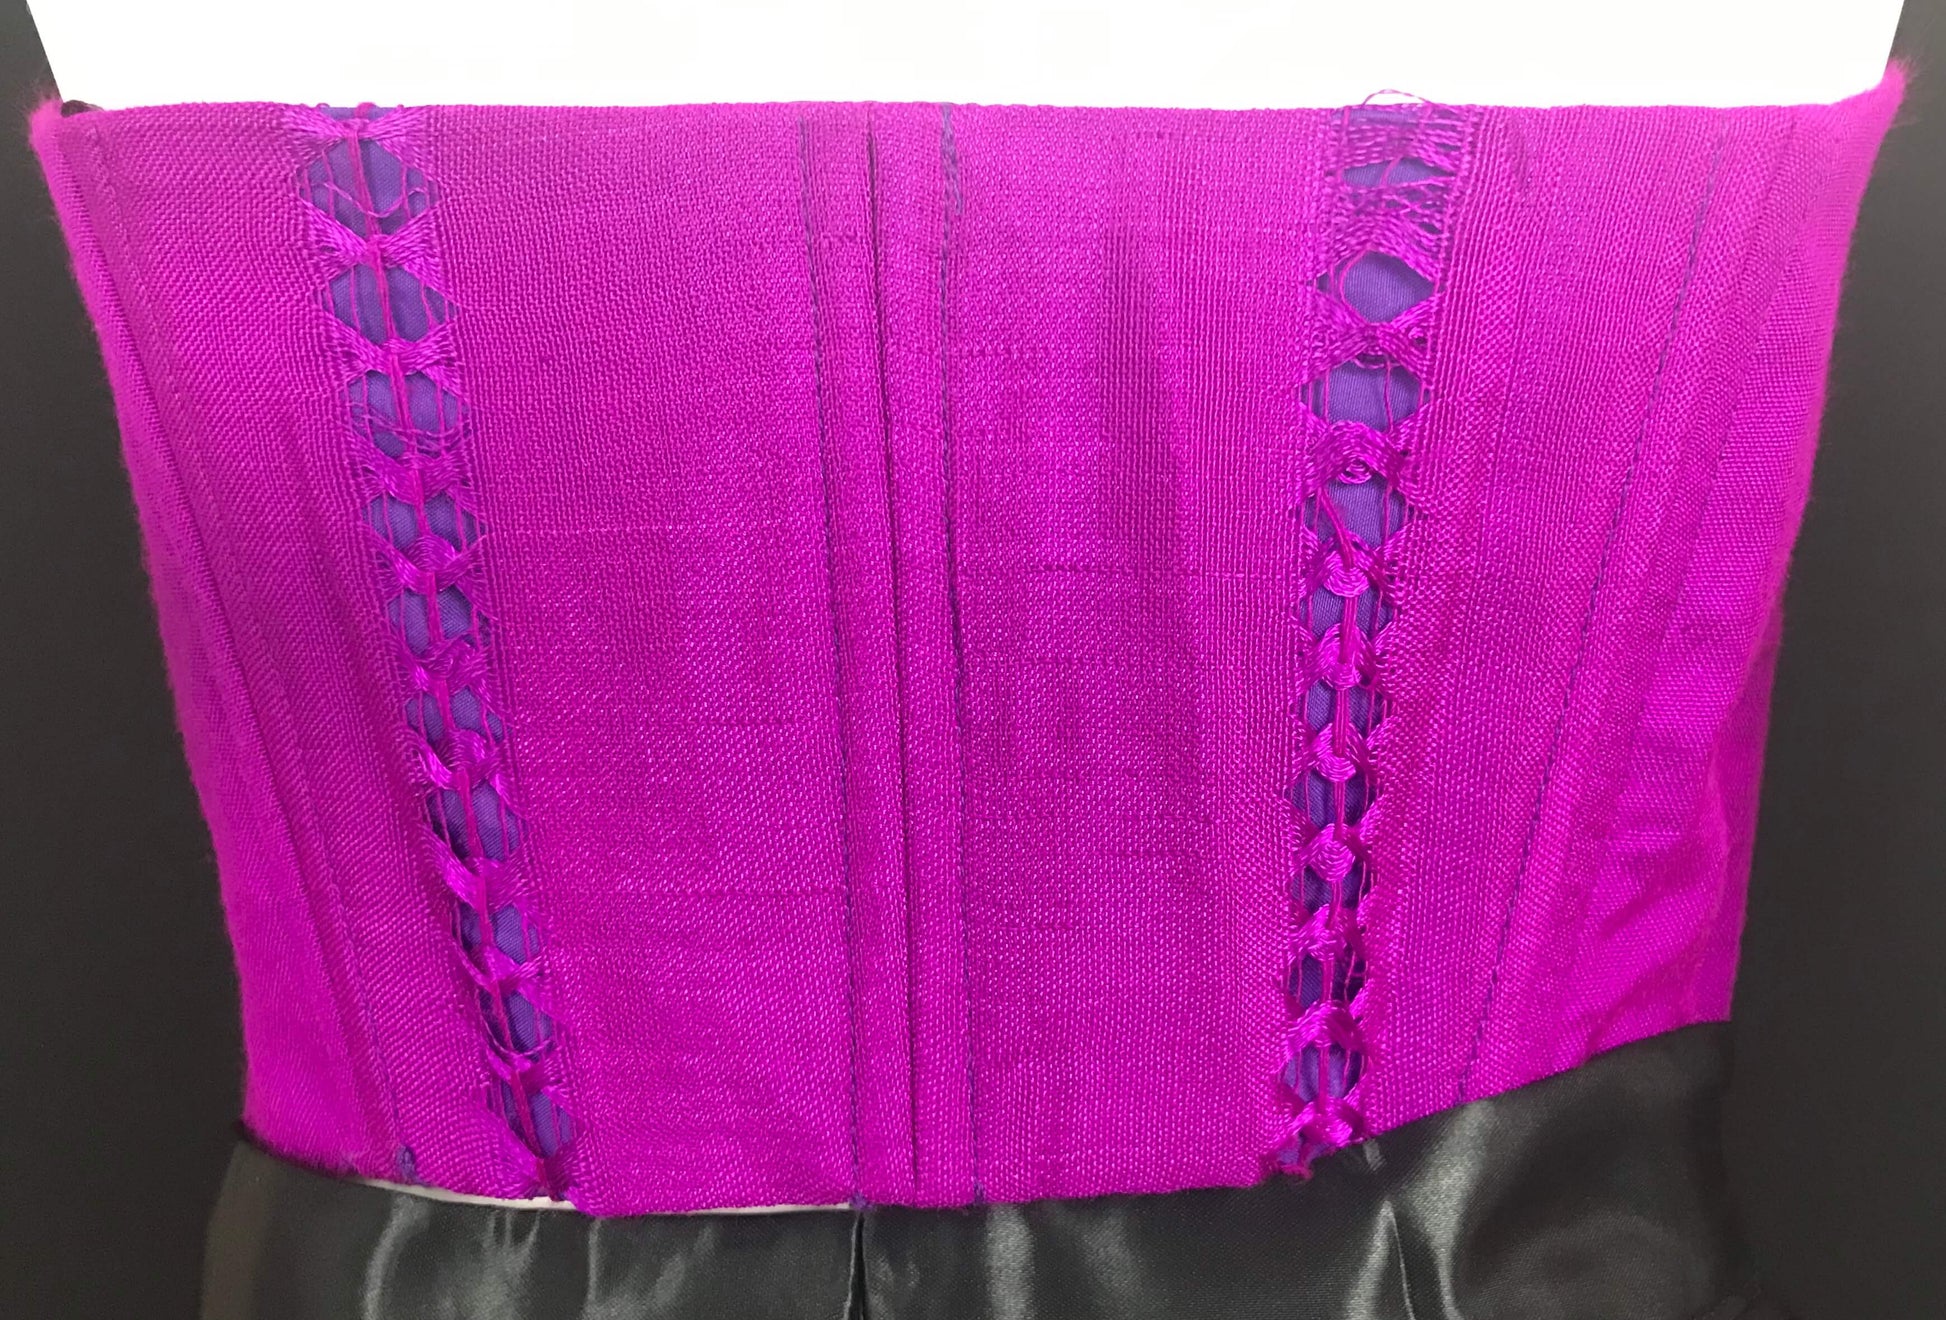 Mexican Fashion Embroidered Corset - Nayibi Mexico Potosi Violet Corset Colores Decor